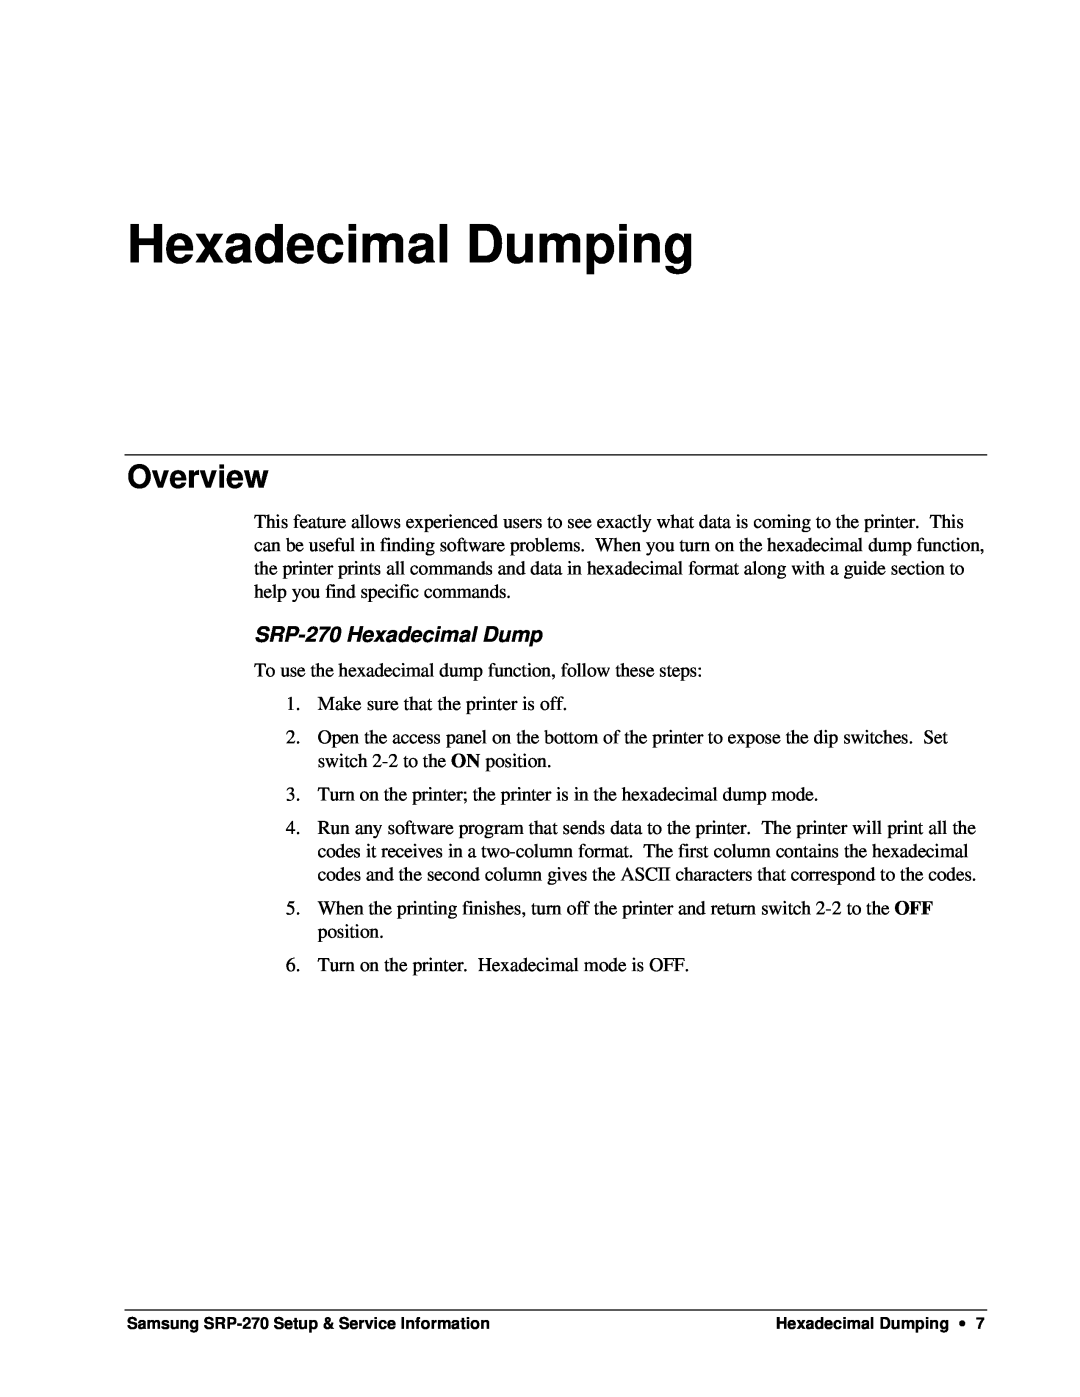 Samsung specifications Hexadecimal Dumping, SRP-270 Hexadecimal Dump, Overview 